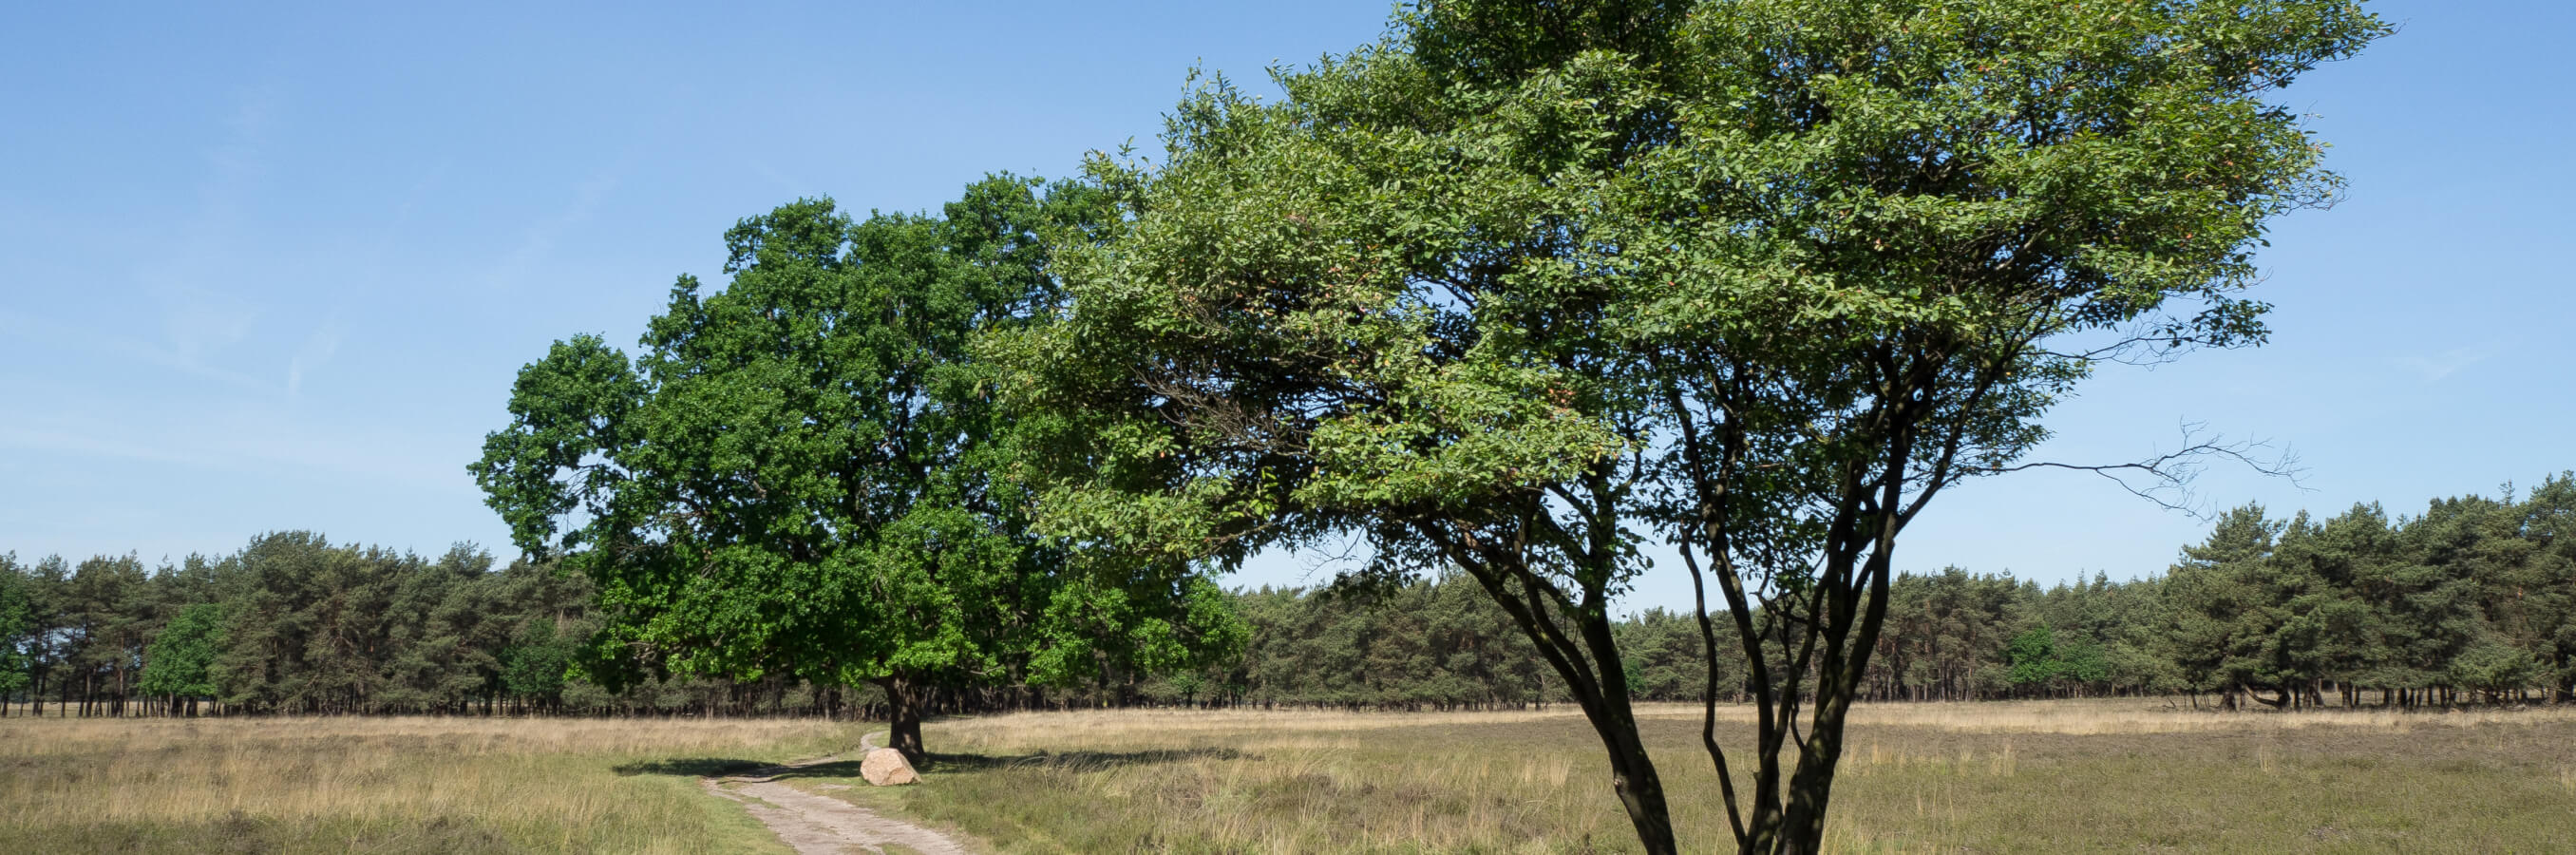 Bussum heide twee bomen nabij locatie mindfulnesstraining